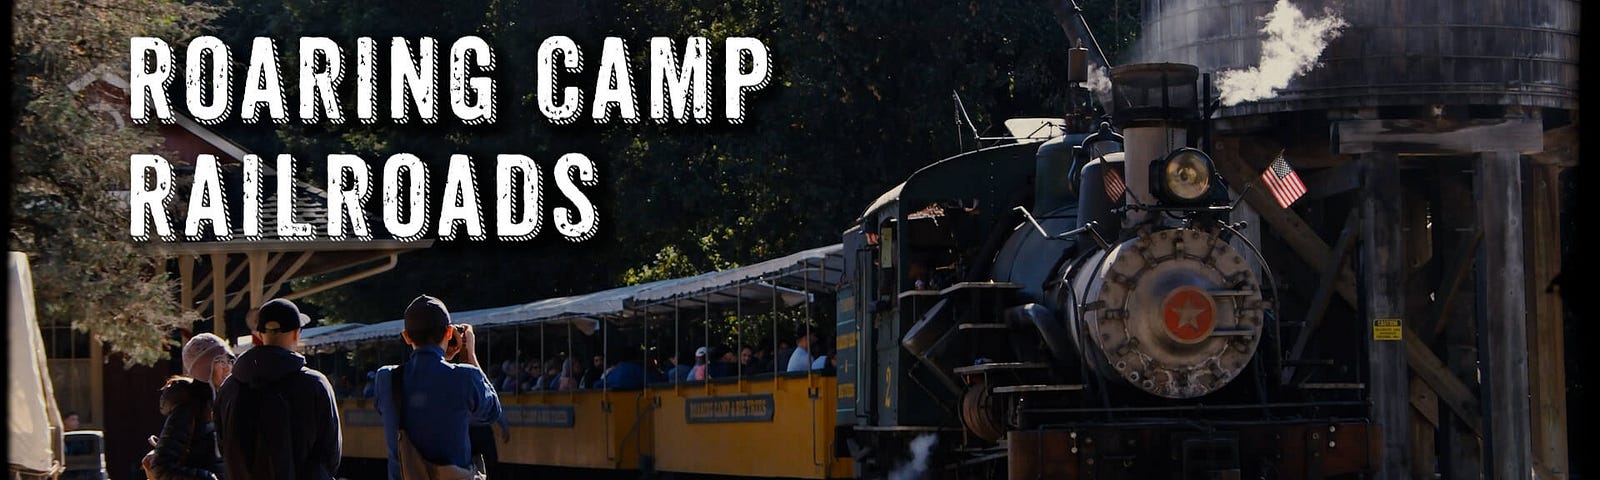 加州 Santa Cruz 親子旅遊絕佳景點─蒸汽火車 Roaring Camp Railroads